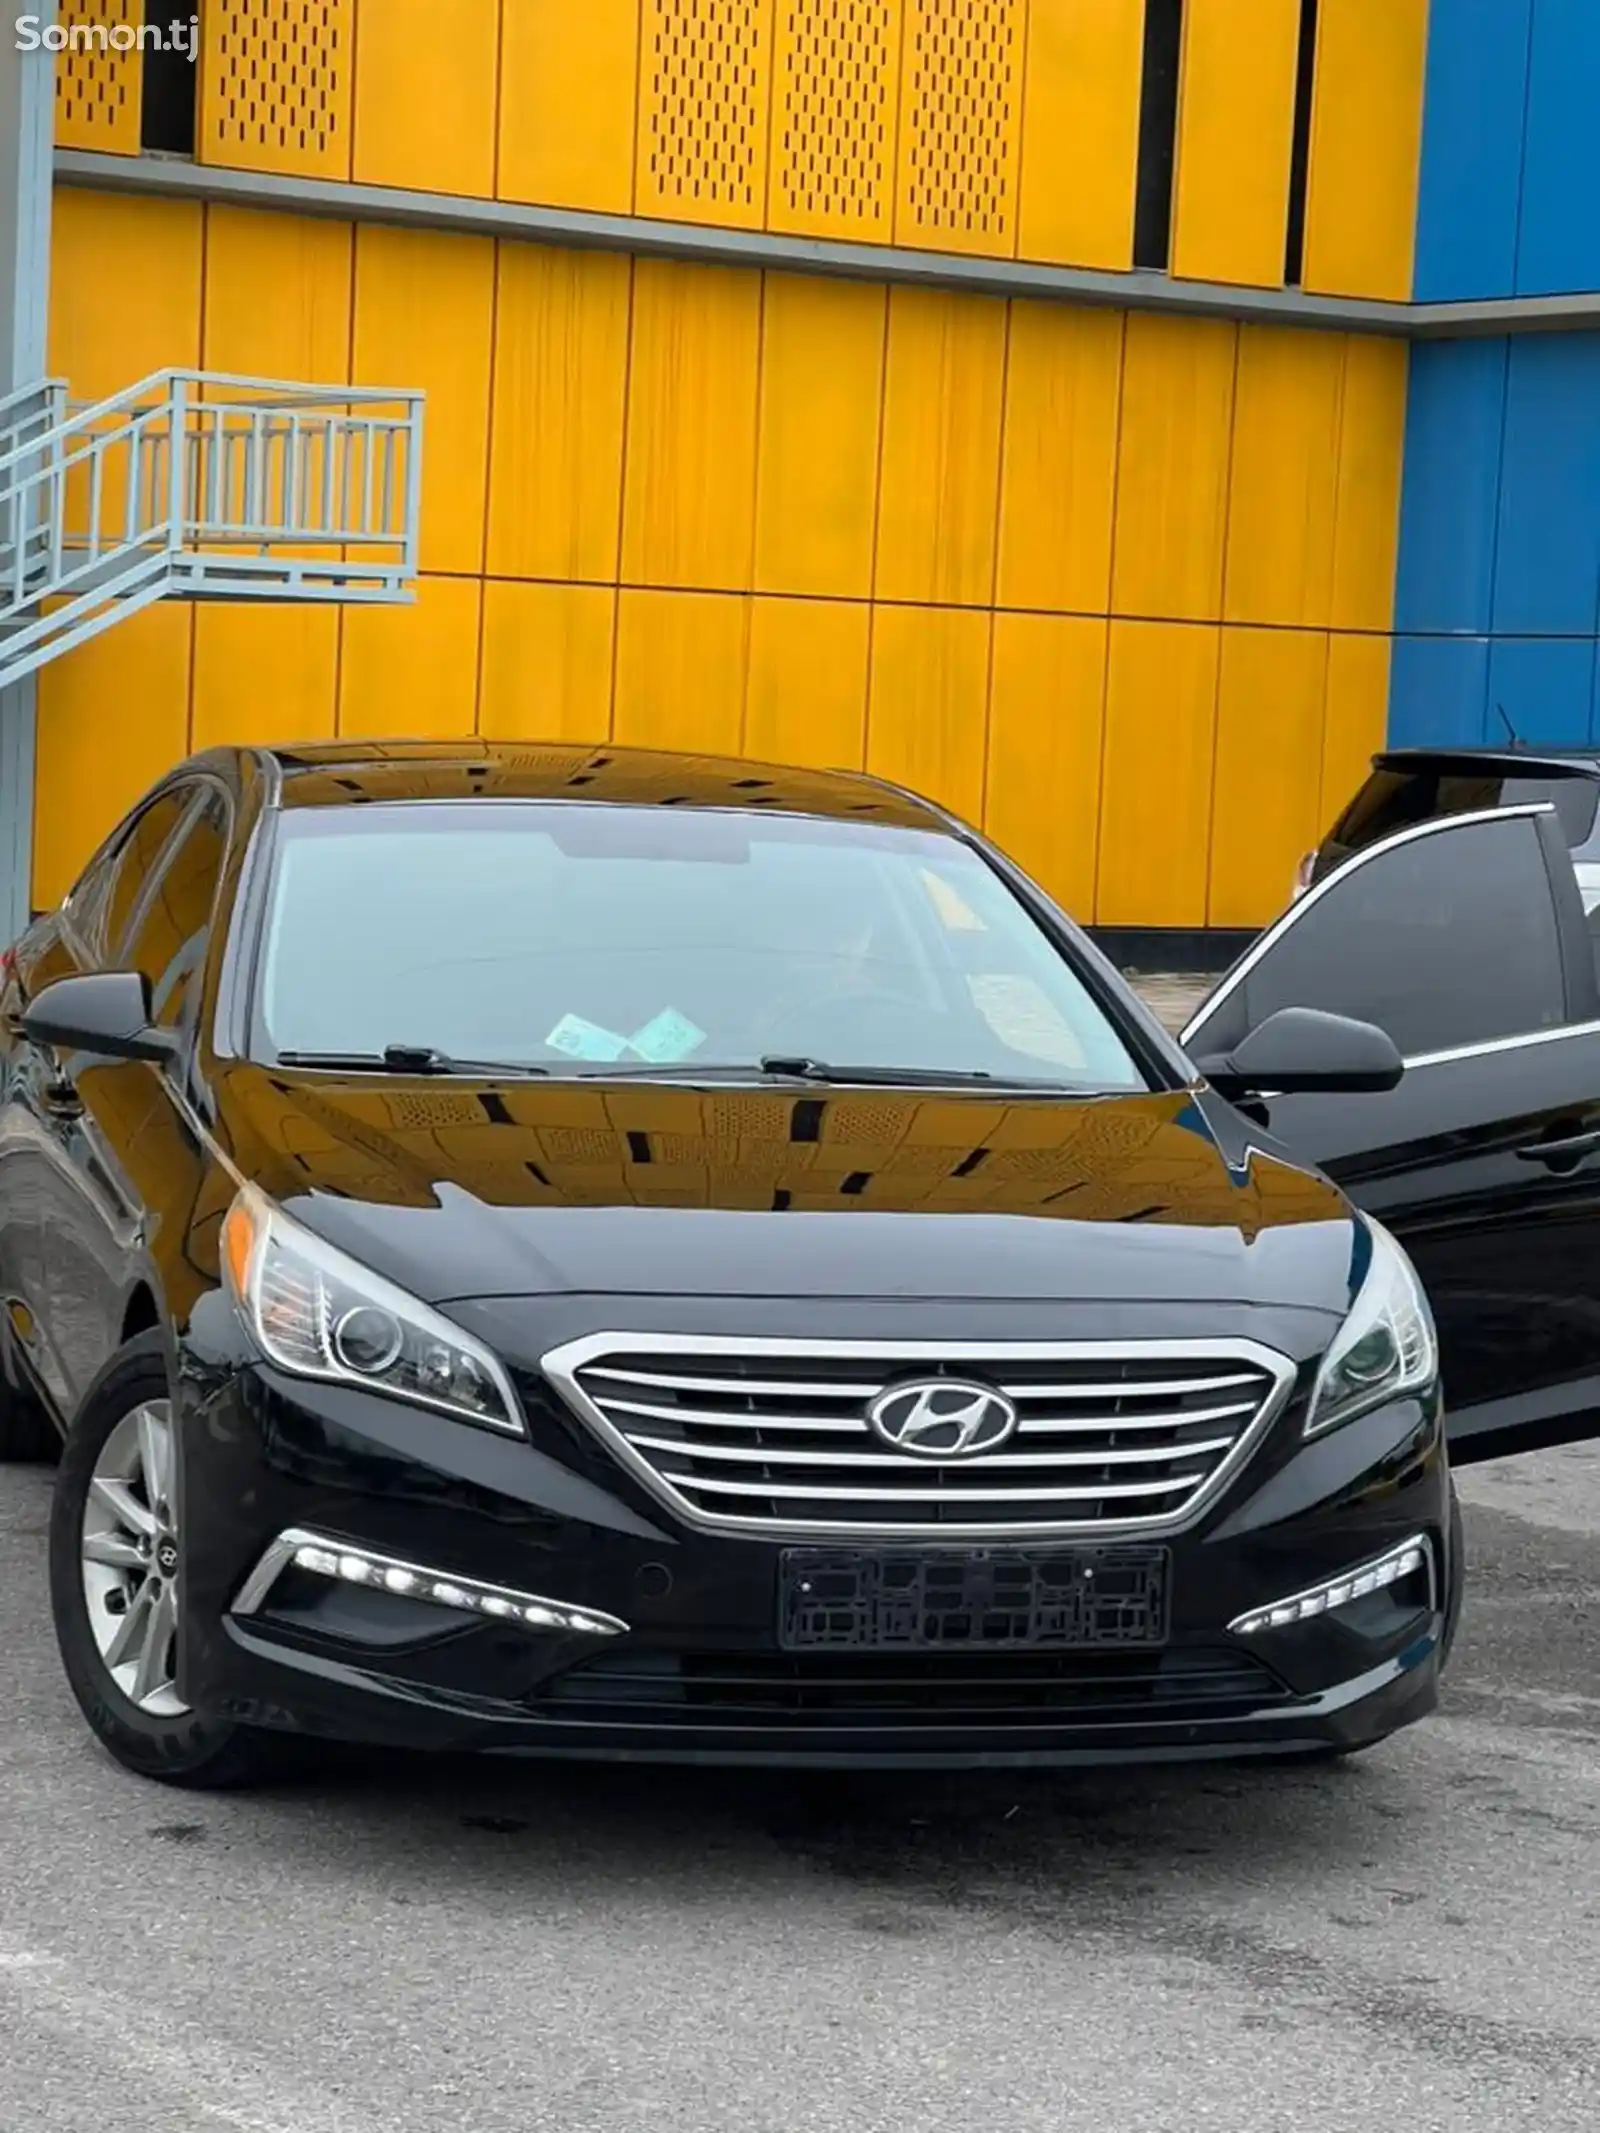 Hyundai Sonata, 2015-12